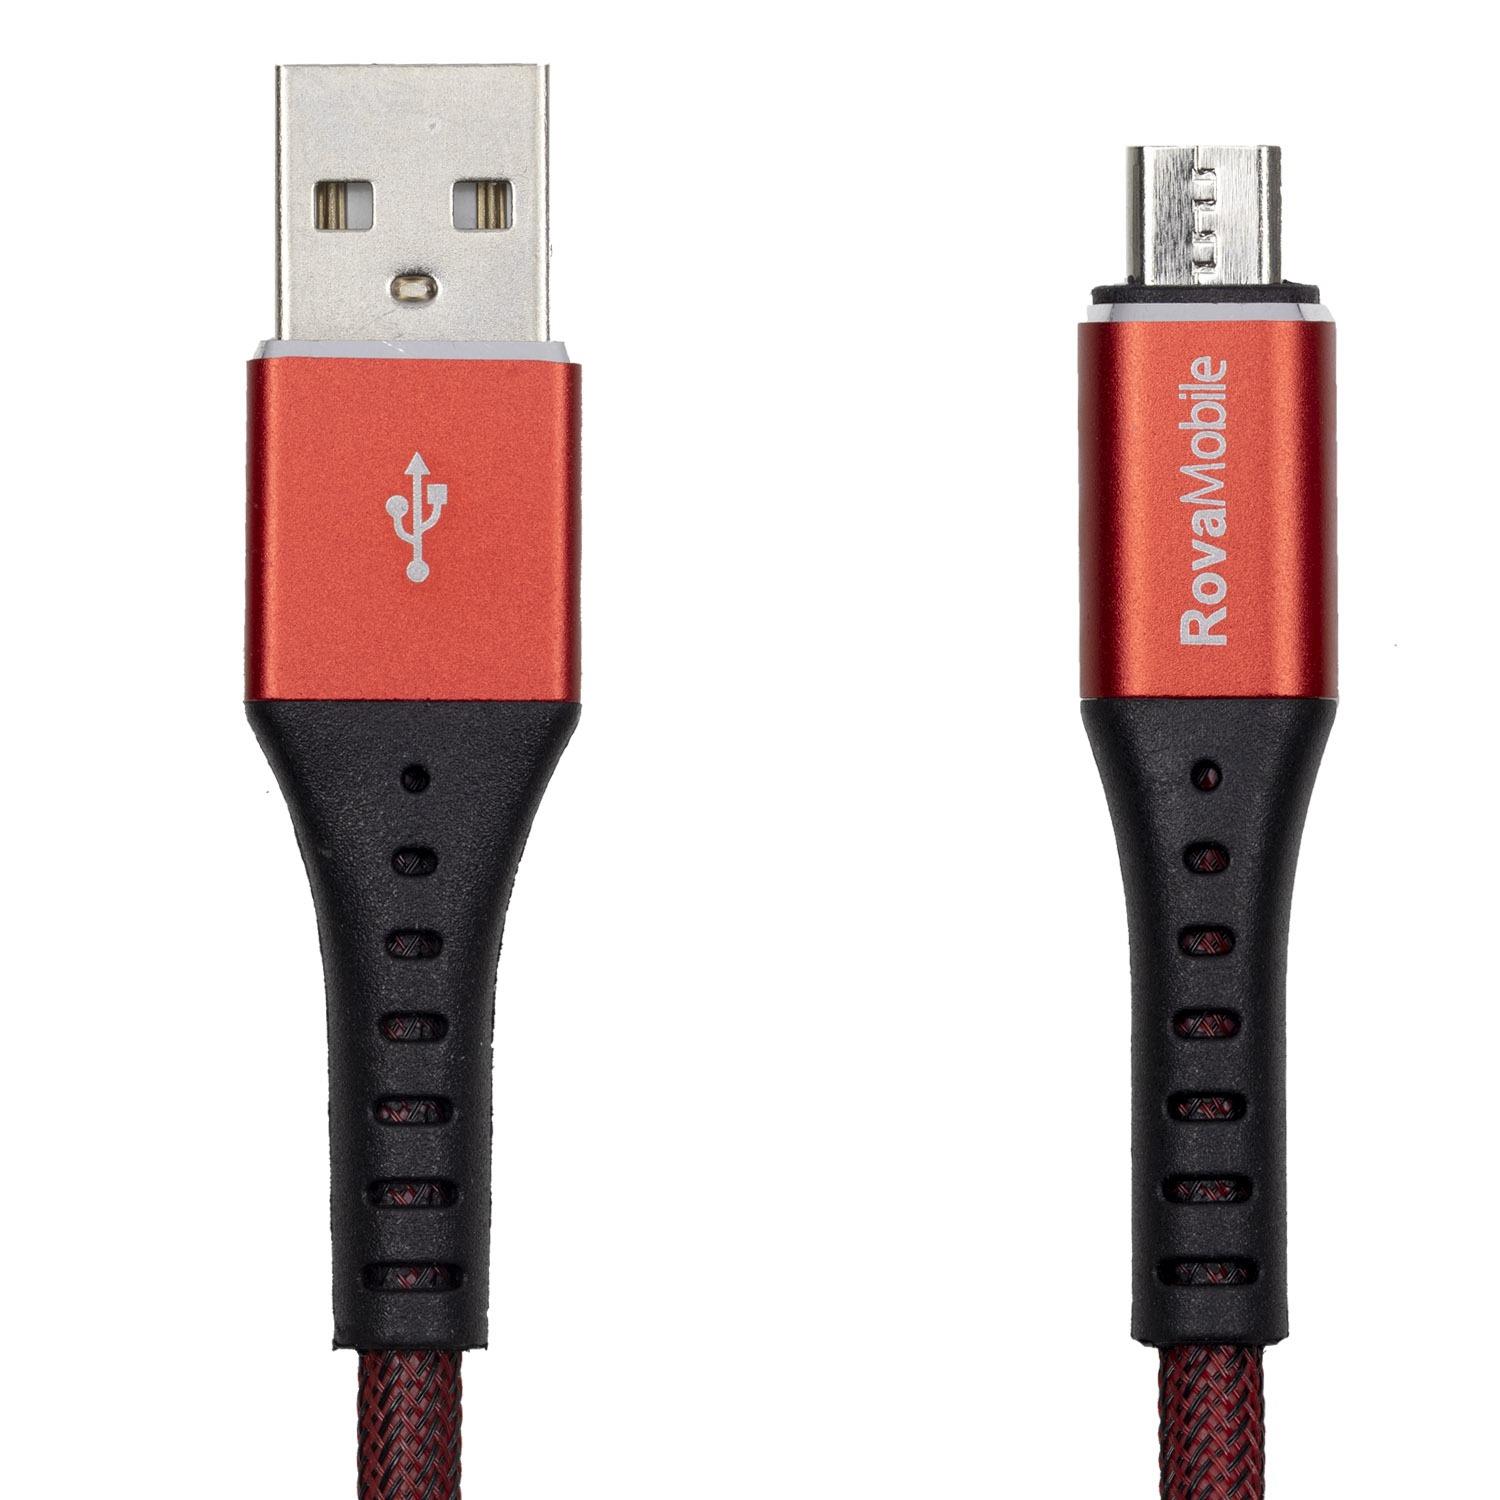 Rova Micro USB 2.4A Hızlı Şarj Kablosu 120 cm kırmızı telefondukkani.com.tr den satın alabilirsiniz.